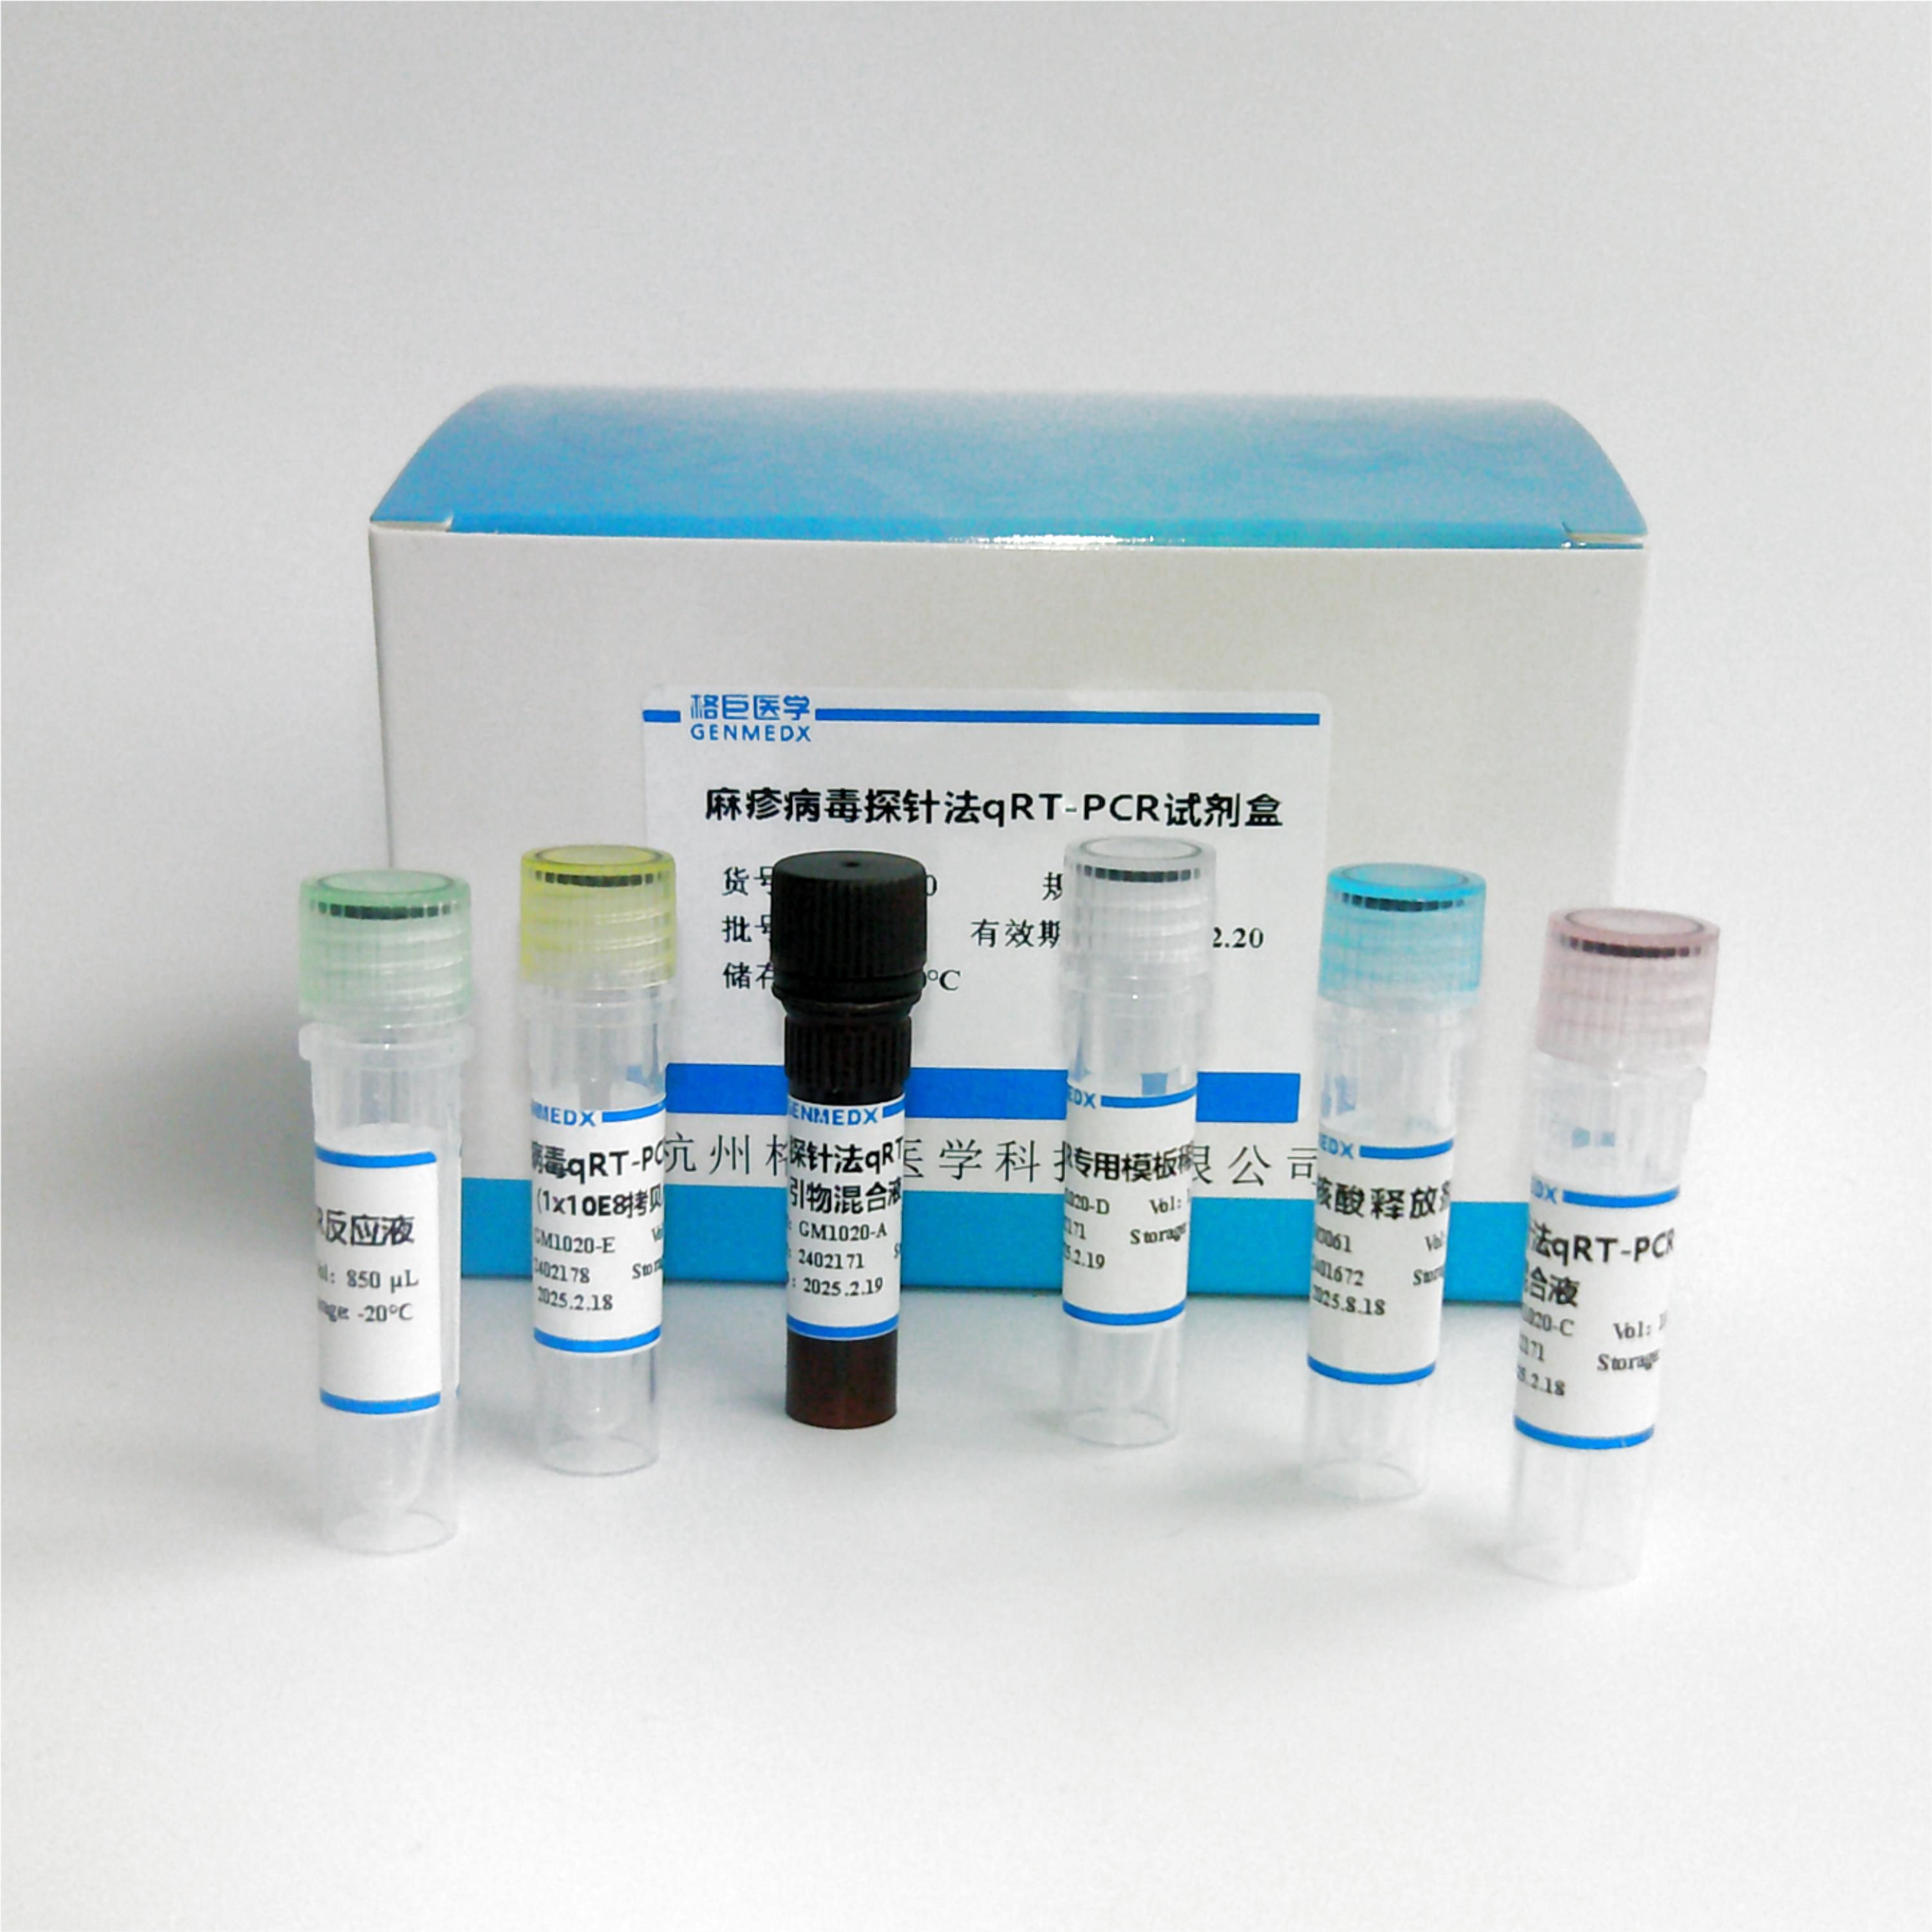 单纯疱疹/病毒2型(herpes simplex virus type 2)探针法荧光定量PCR试剂盒